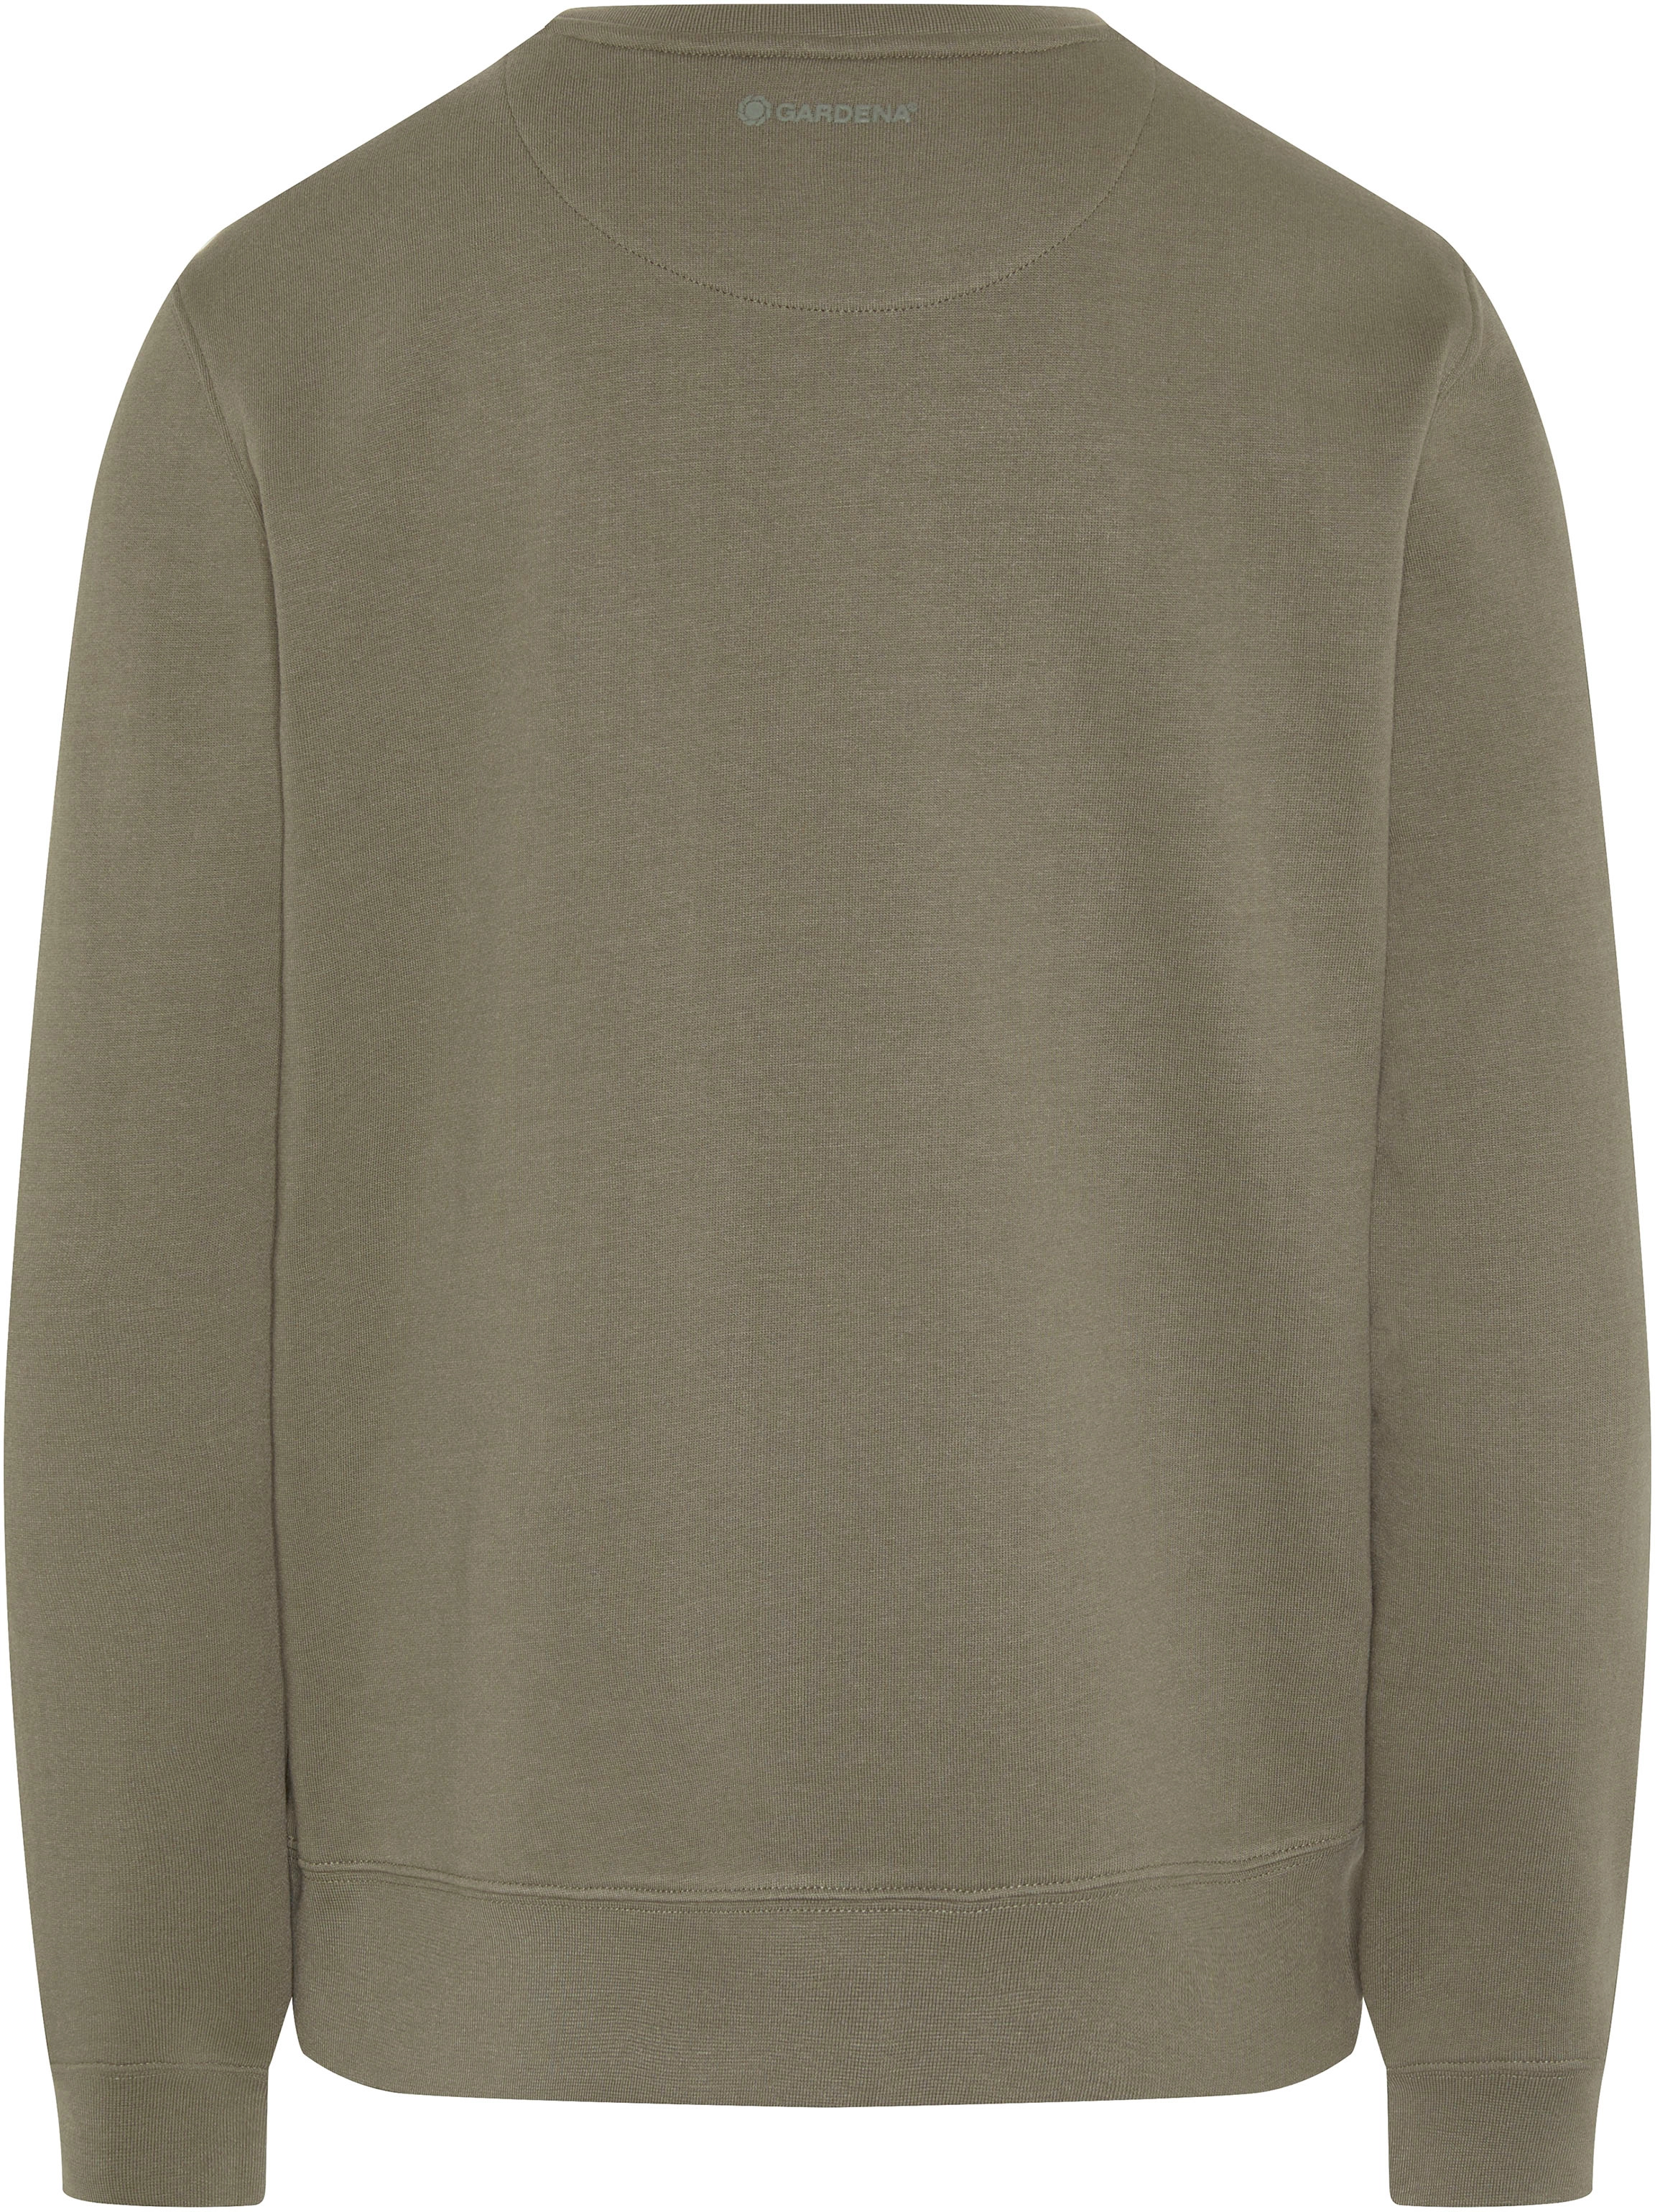 Gardena Damen-Sweatshirt XS bei Dusty Olive kaufen OBI